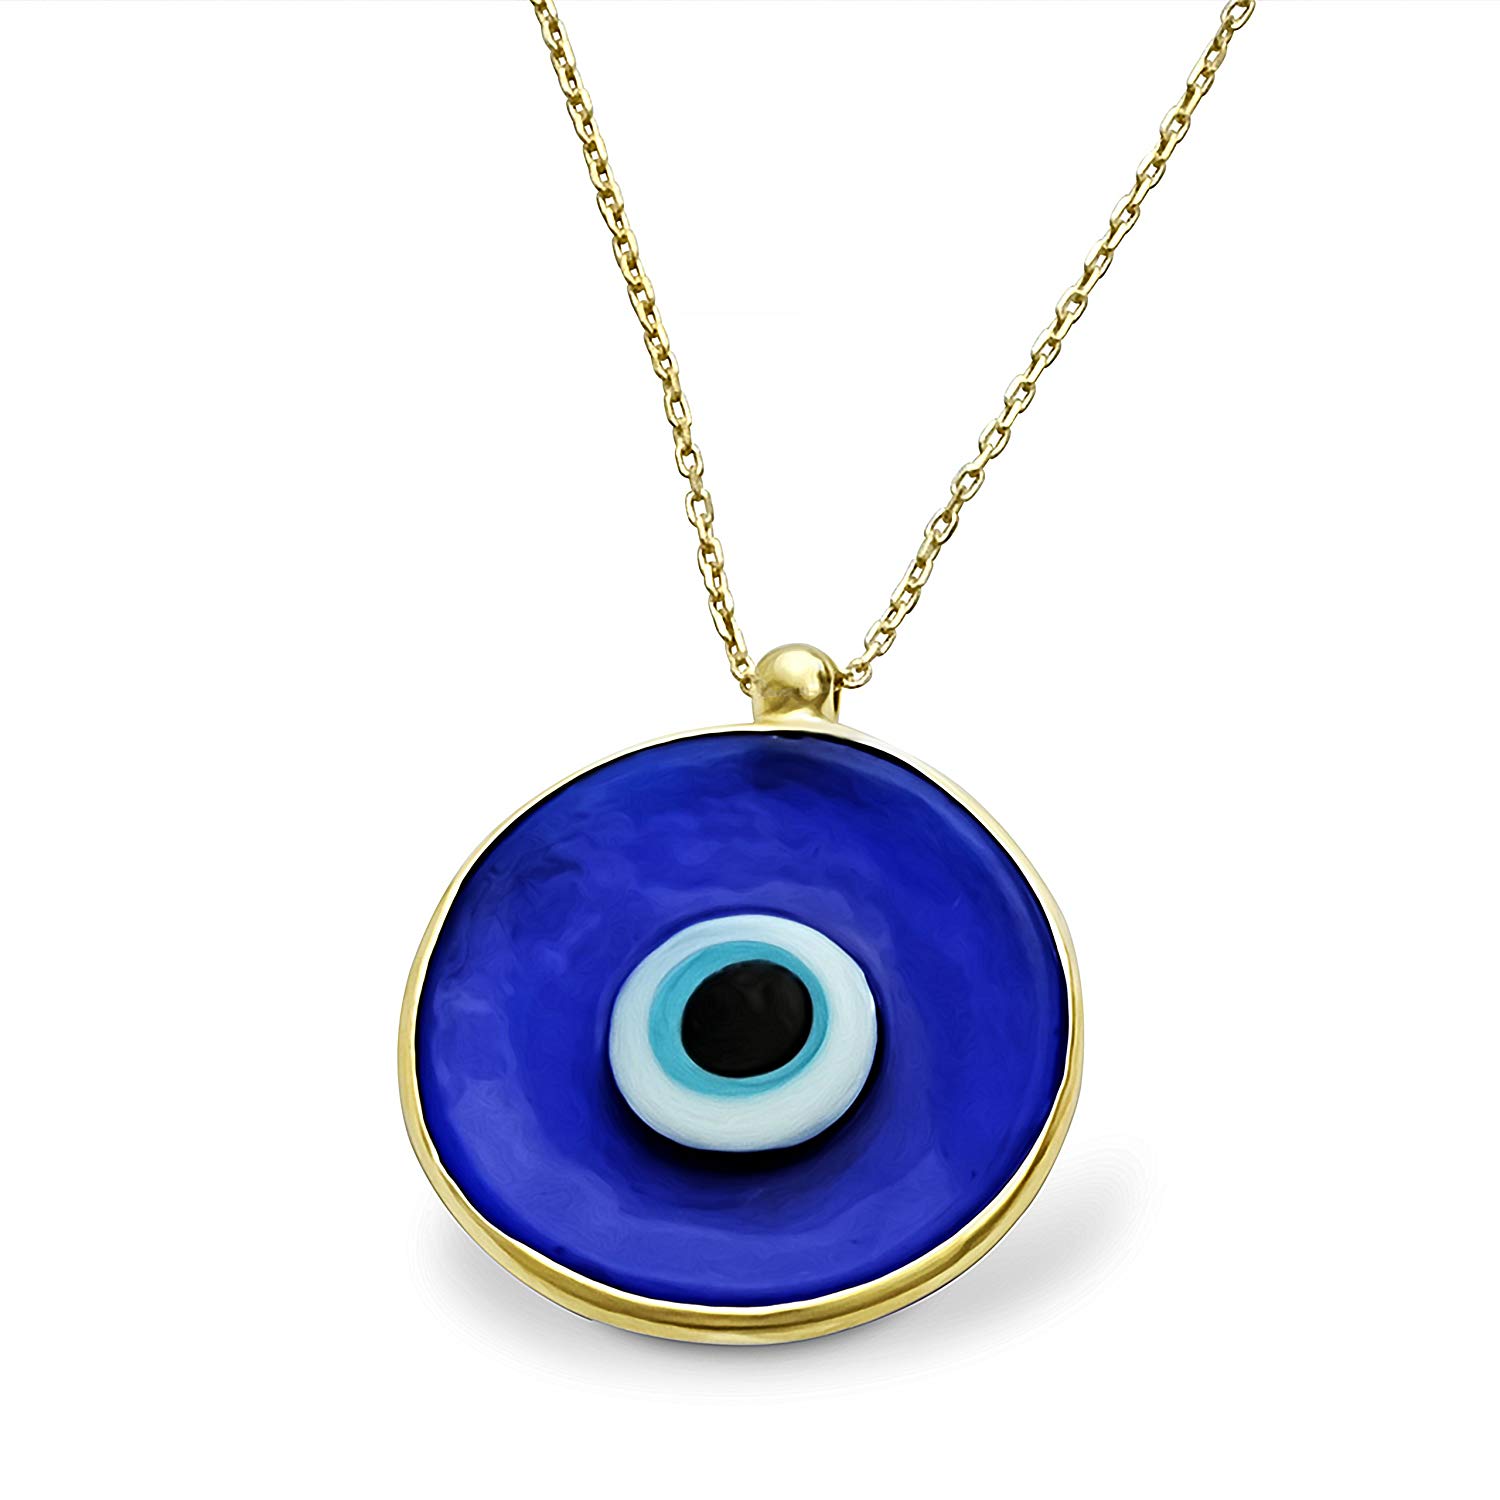 Yifnny Böses Auge Halskette, Türkisches Auge Halskette Pave Cubic